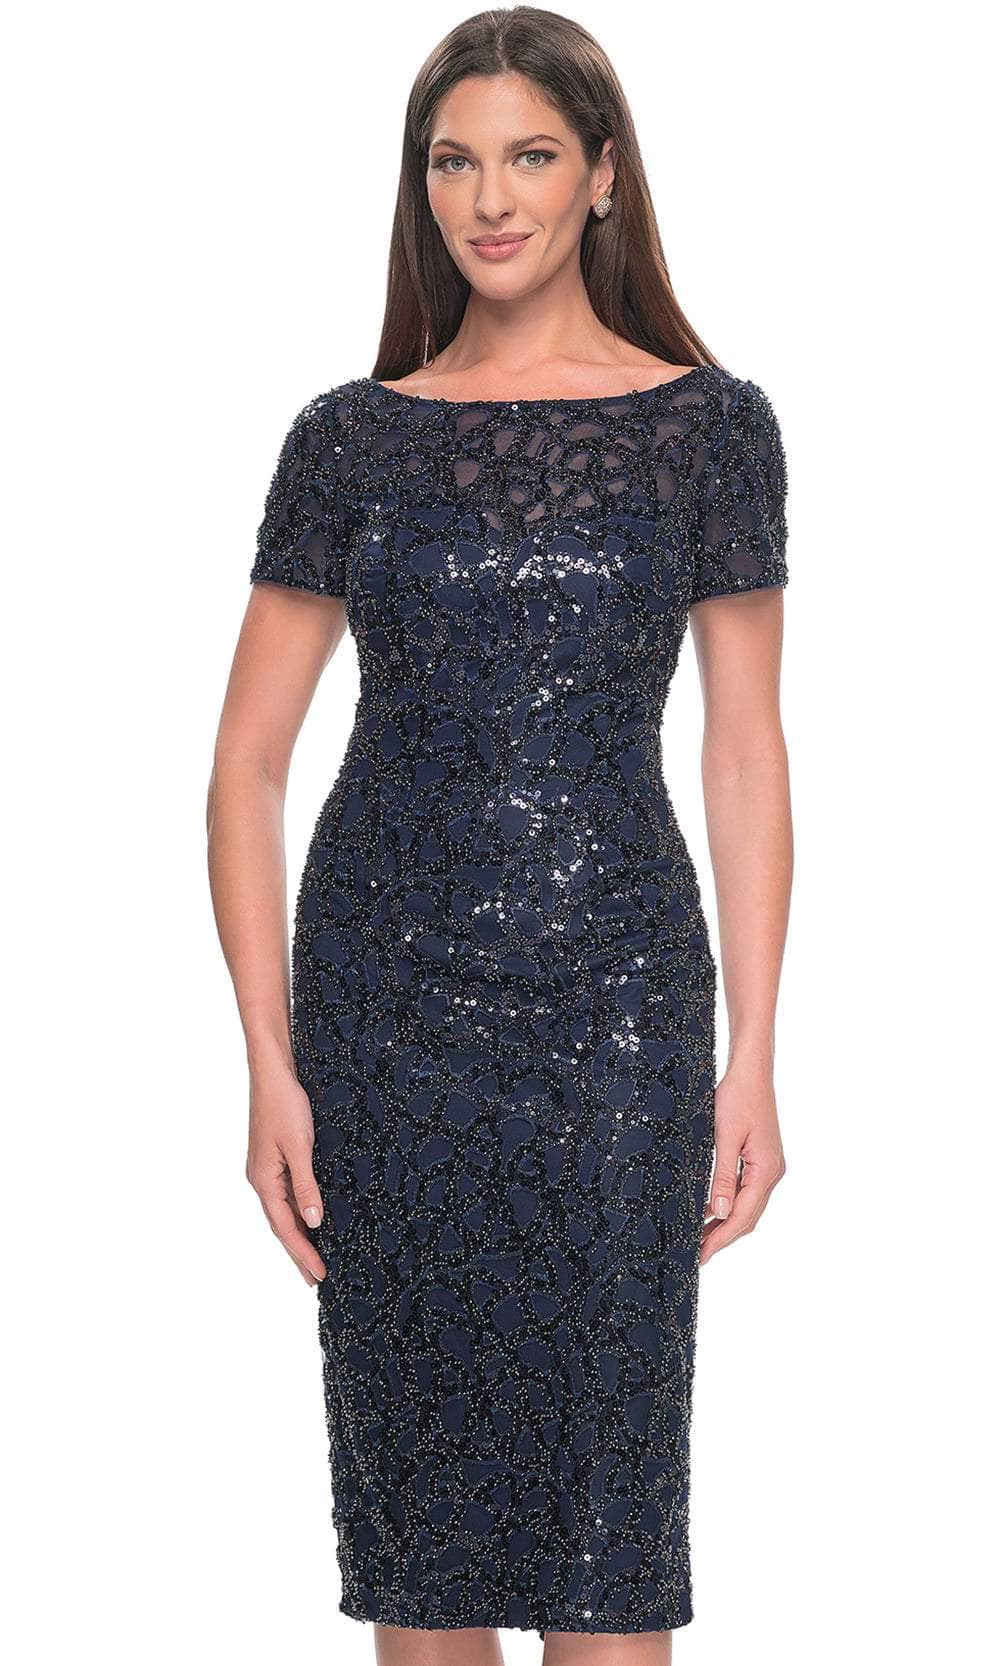 La Femme 30043 - Short Sleeve Sequin Embellished Dress Cocktail Dresses